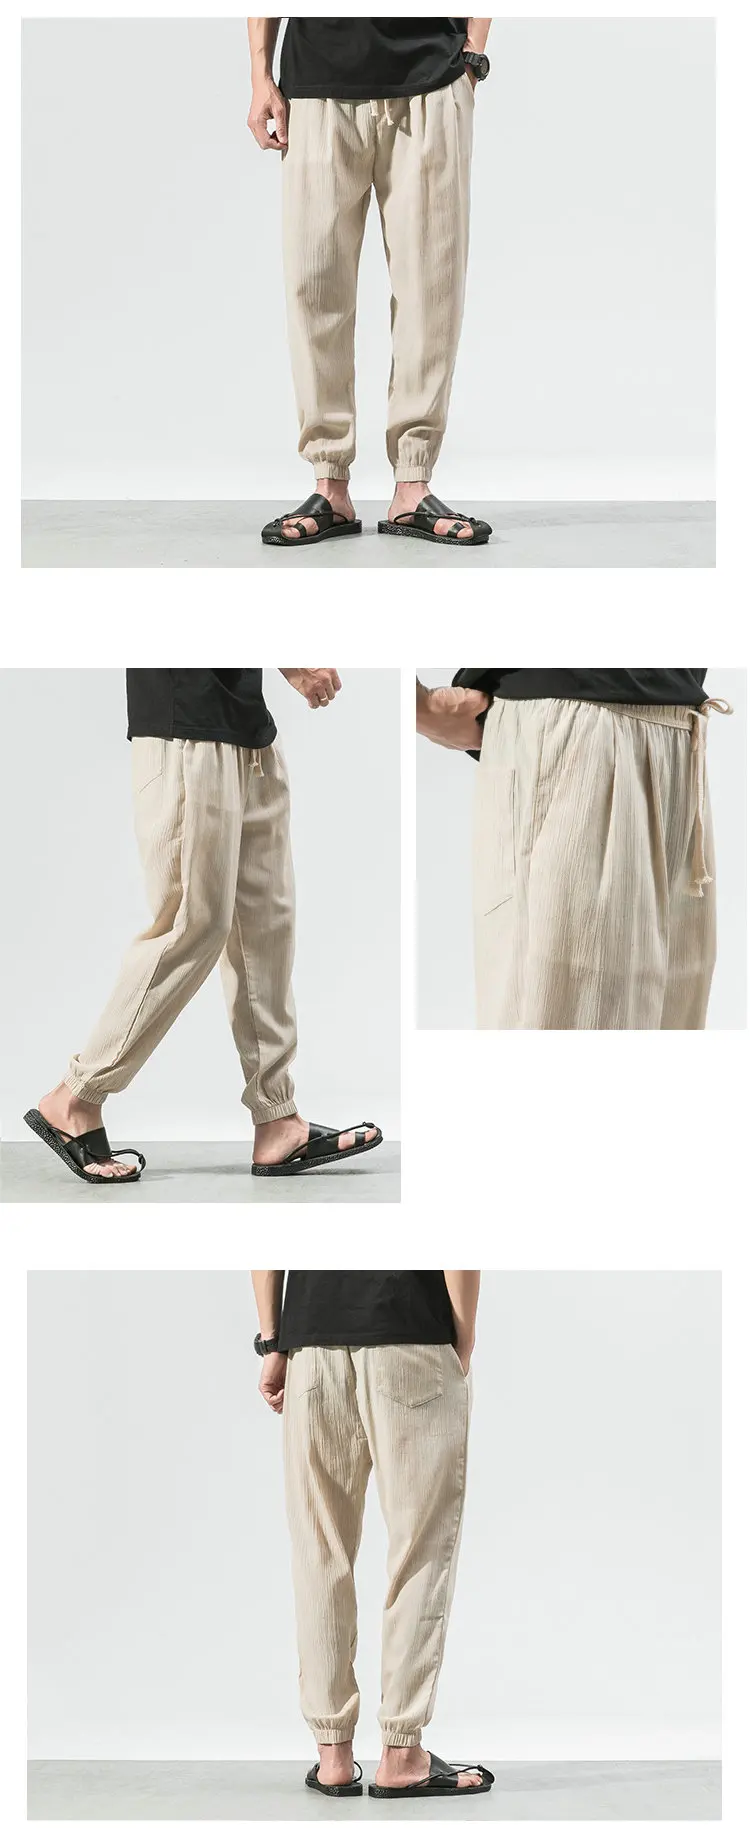 2019 летние горячие льняные мужские брюки повседневные по щиколотку мужские брюки тренировочные брюки мужские (Азиатский размер)